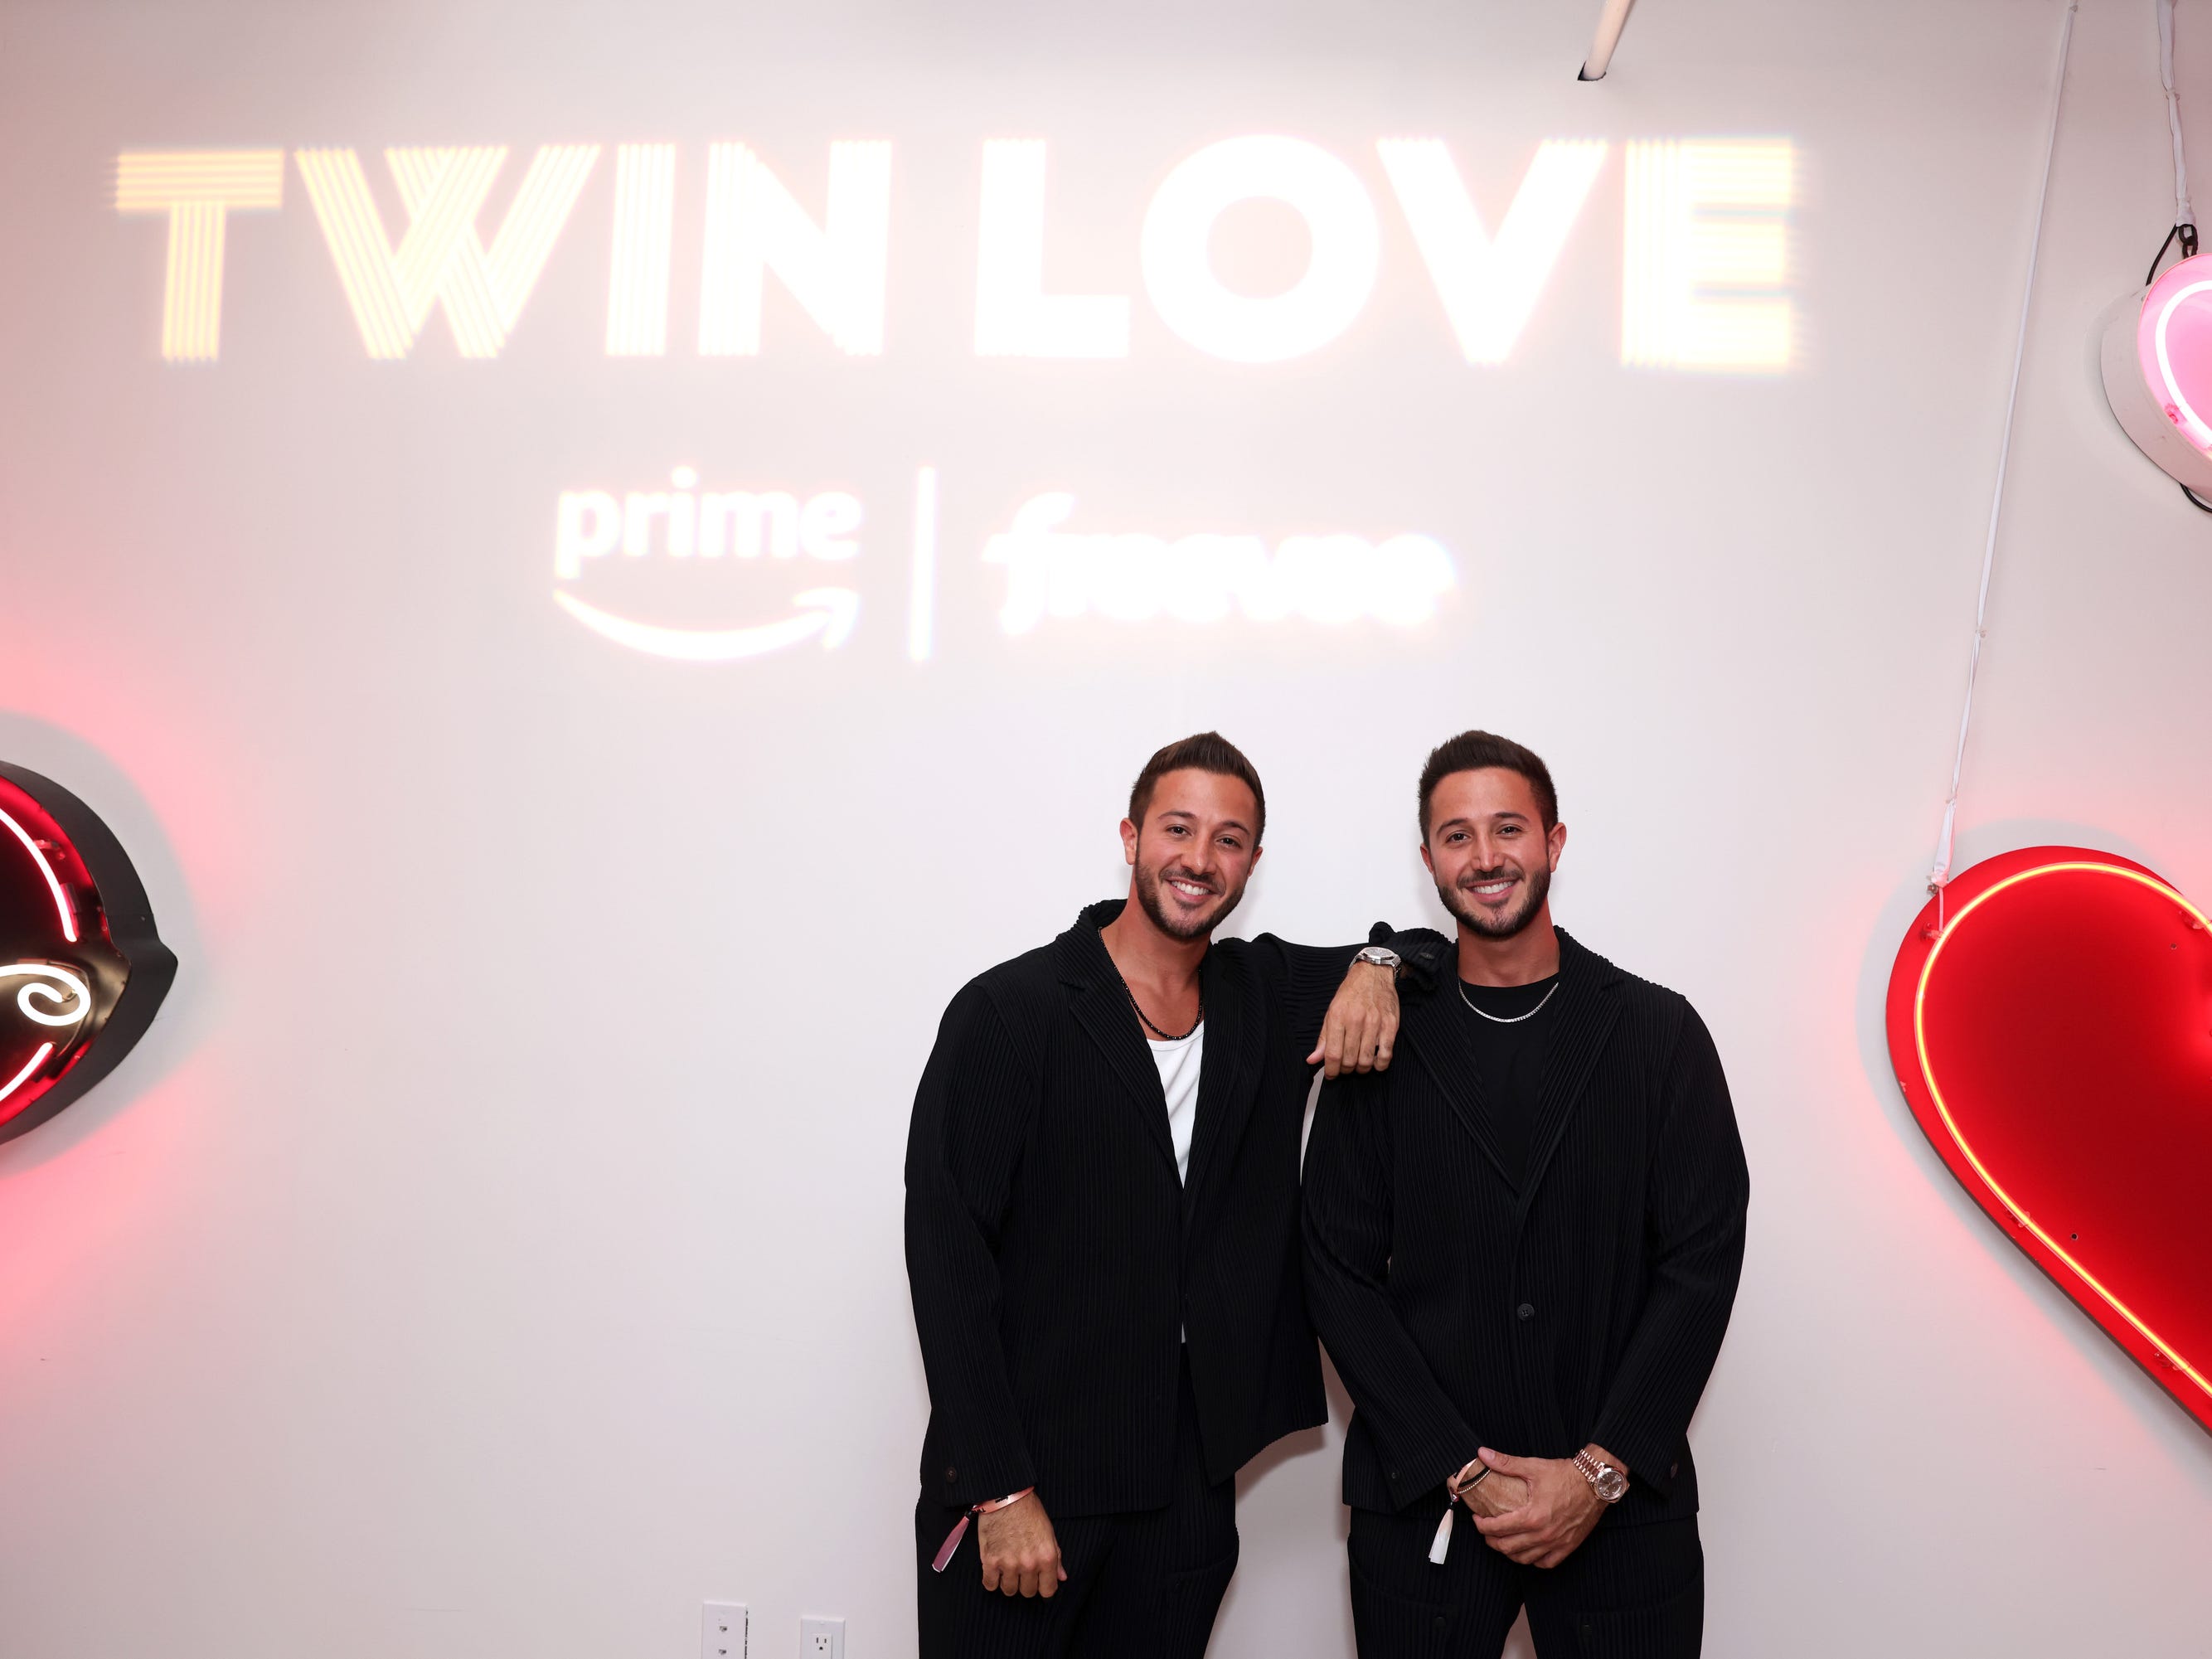 Samer und Samir Akel in schwarzer Kleidung, lächelnd unter einem Schild mit der Aufschrift „Zwillingsliebe“.